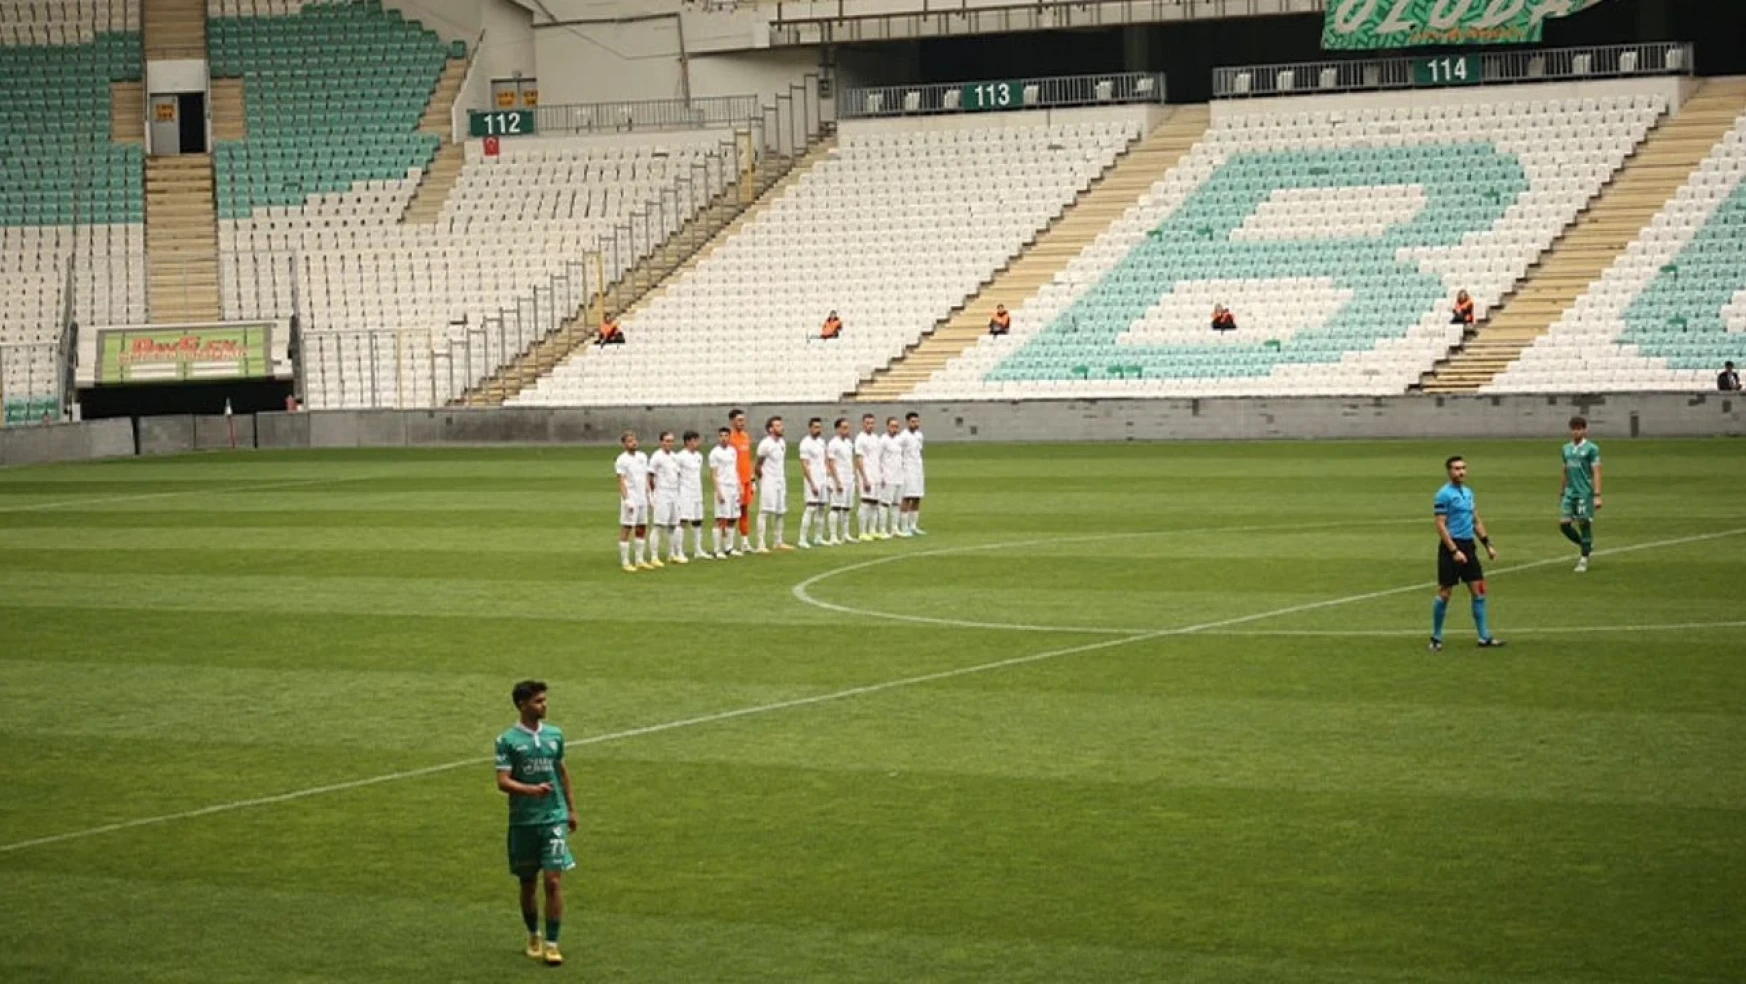 Bursaspor – Van Spor maçı yarıda kaldı! Van Spor sahayı terk etti